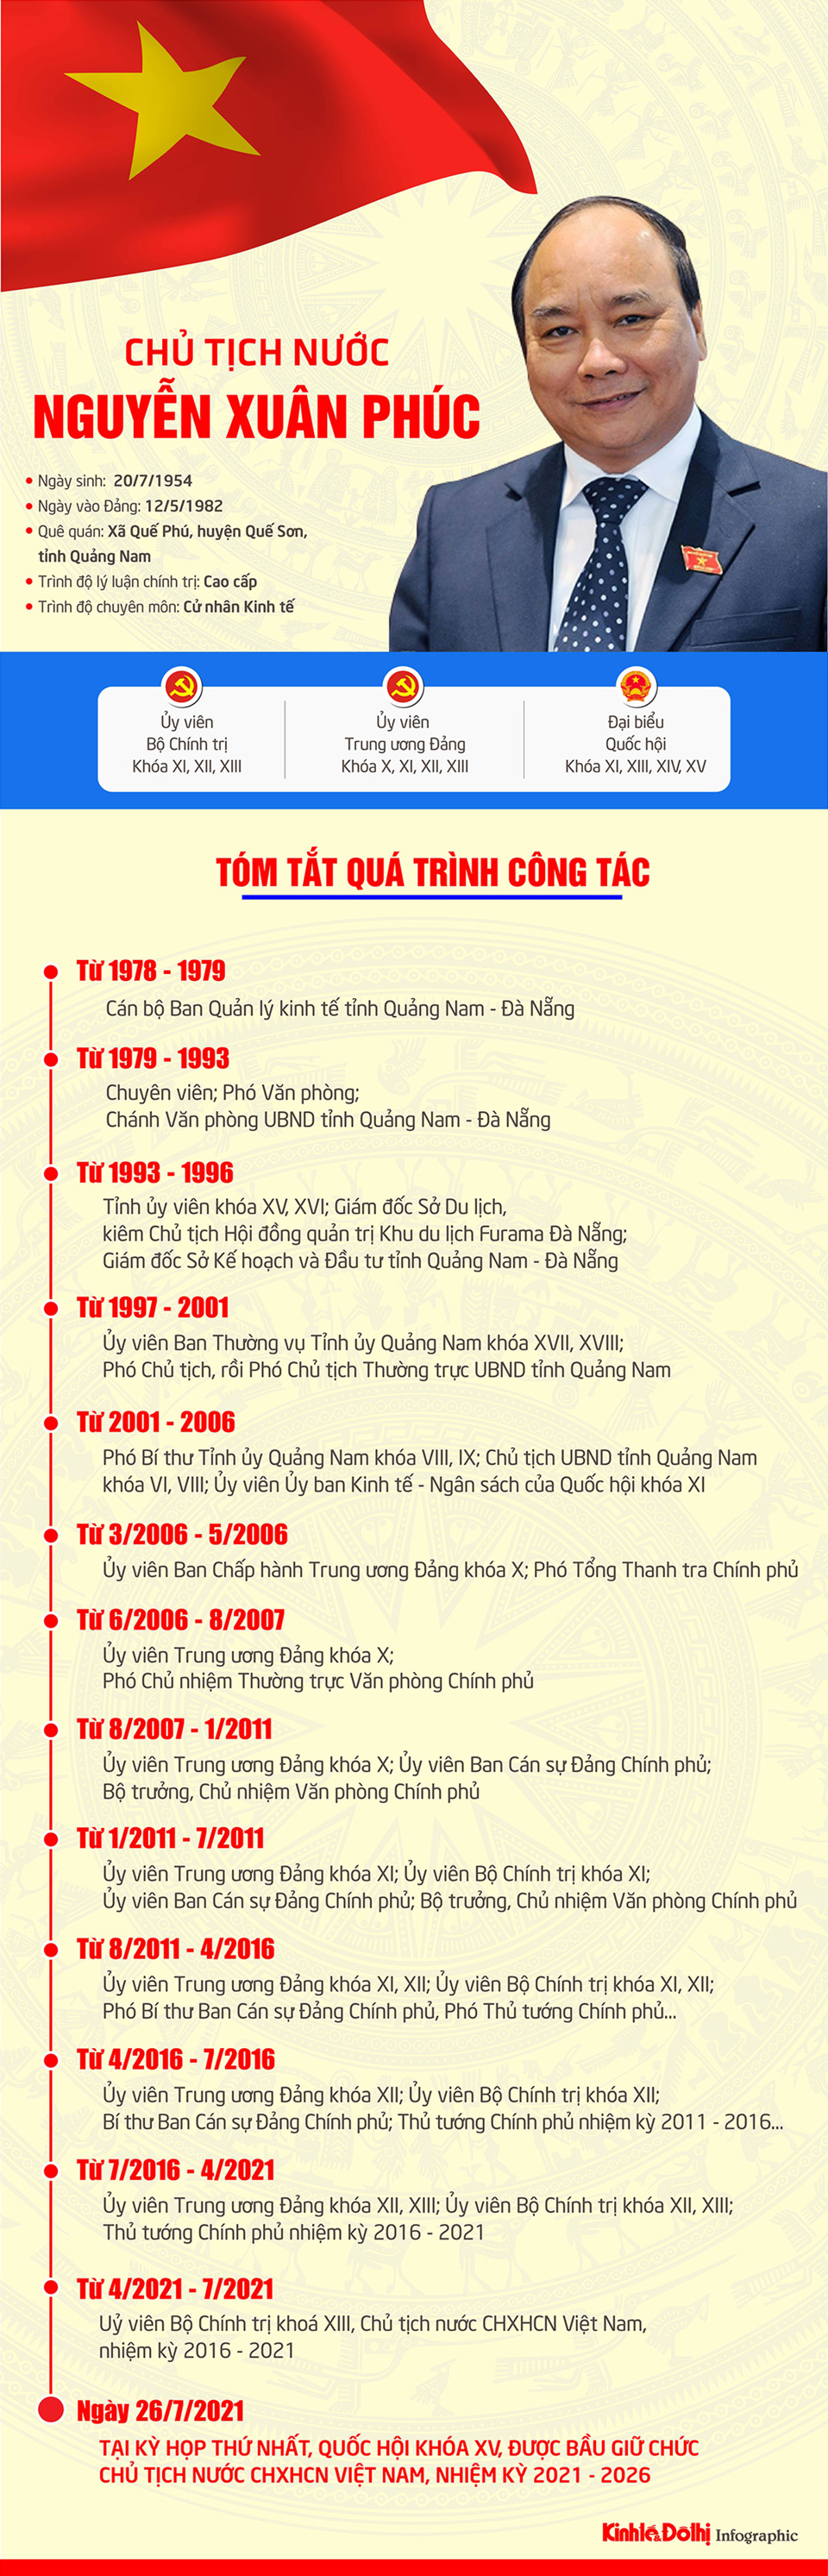 [Infographic] Chân dung Chủ tịch nước Nguyễn Xuân Phúc - Ảnh 1